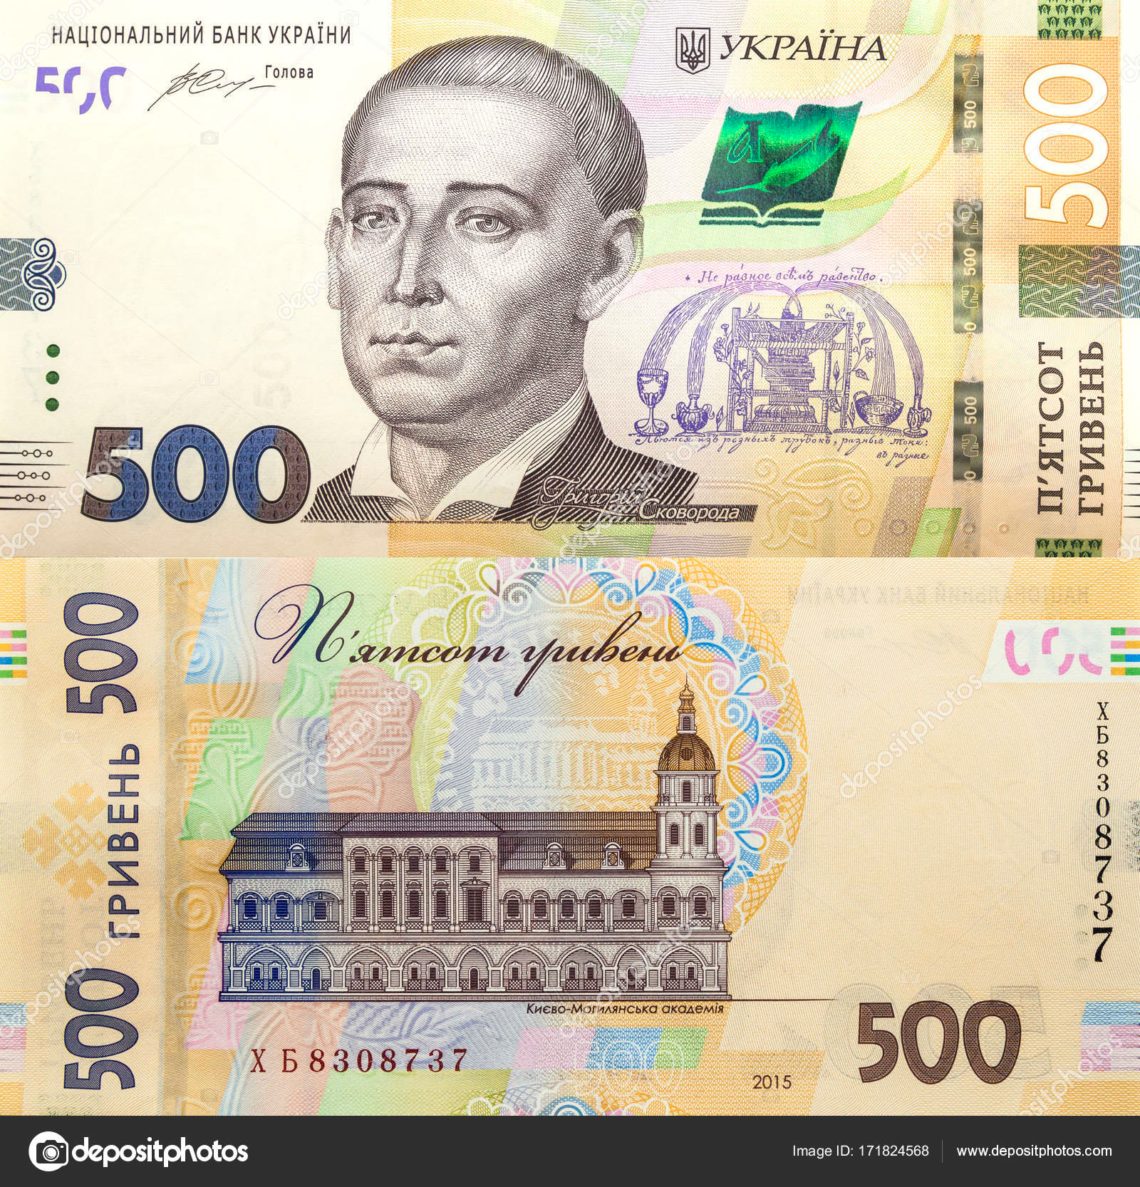 Найчастіше в Україні підробляють 500 гривень. Підроблені банкноти виготовлялися з використанням копіювальної або комп'ютерної техніки.